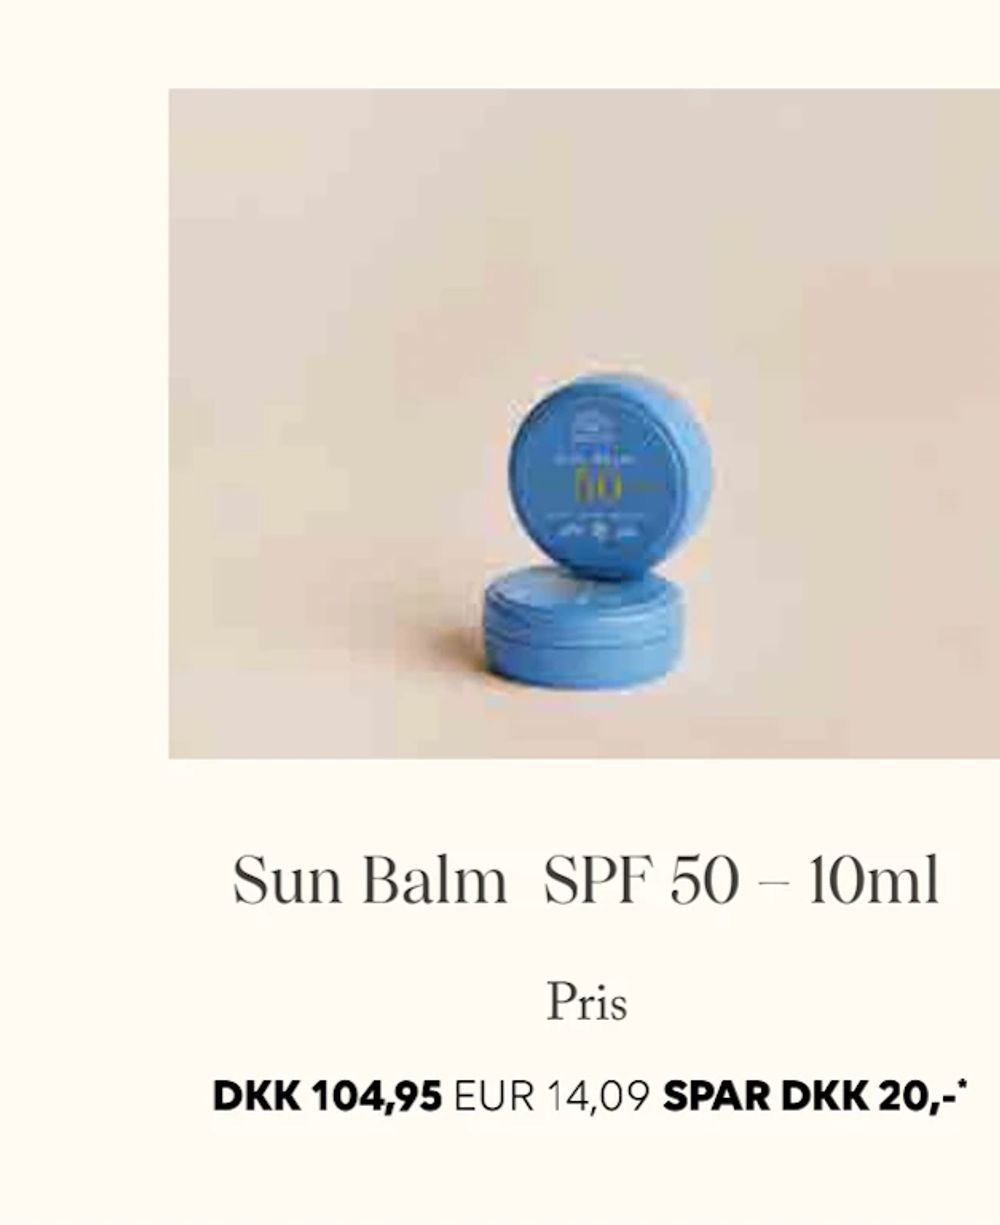 Tilbud på Sun Balm SPF 50 – 10ml fra Scandlines Travel Shop til 104,95 kr.